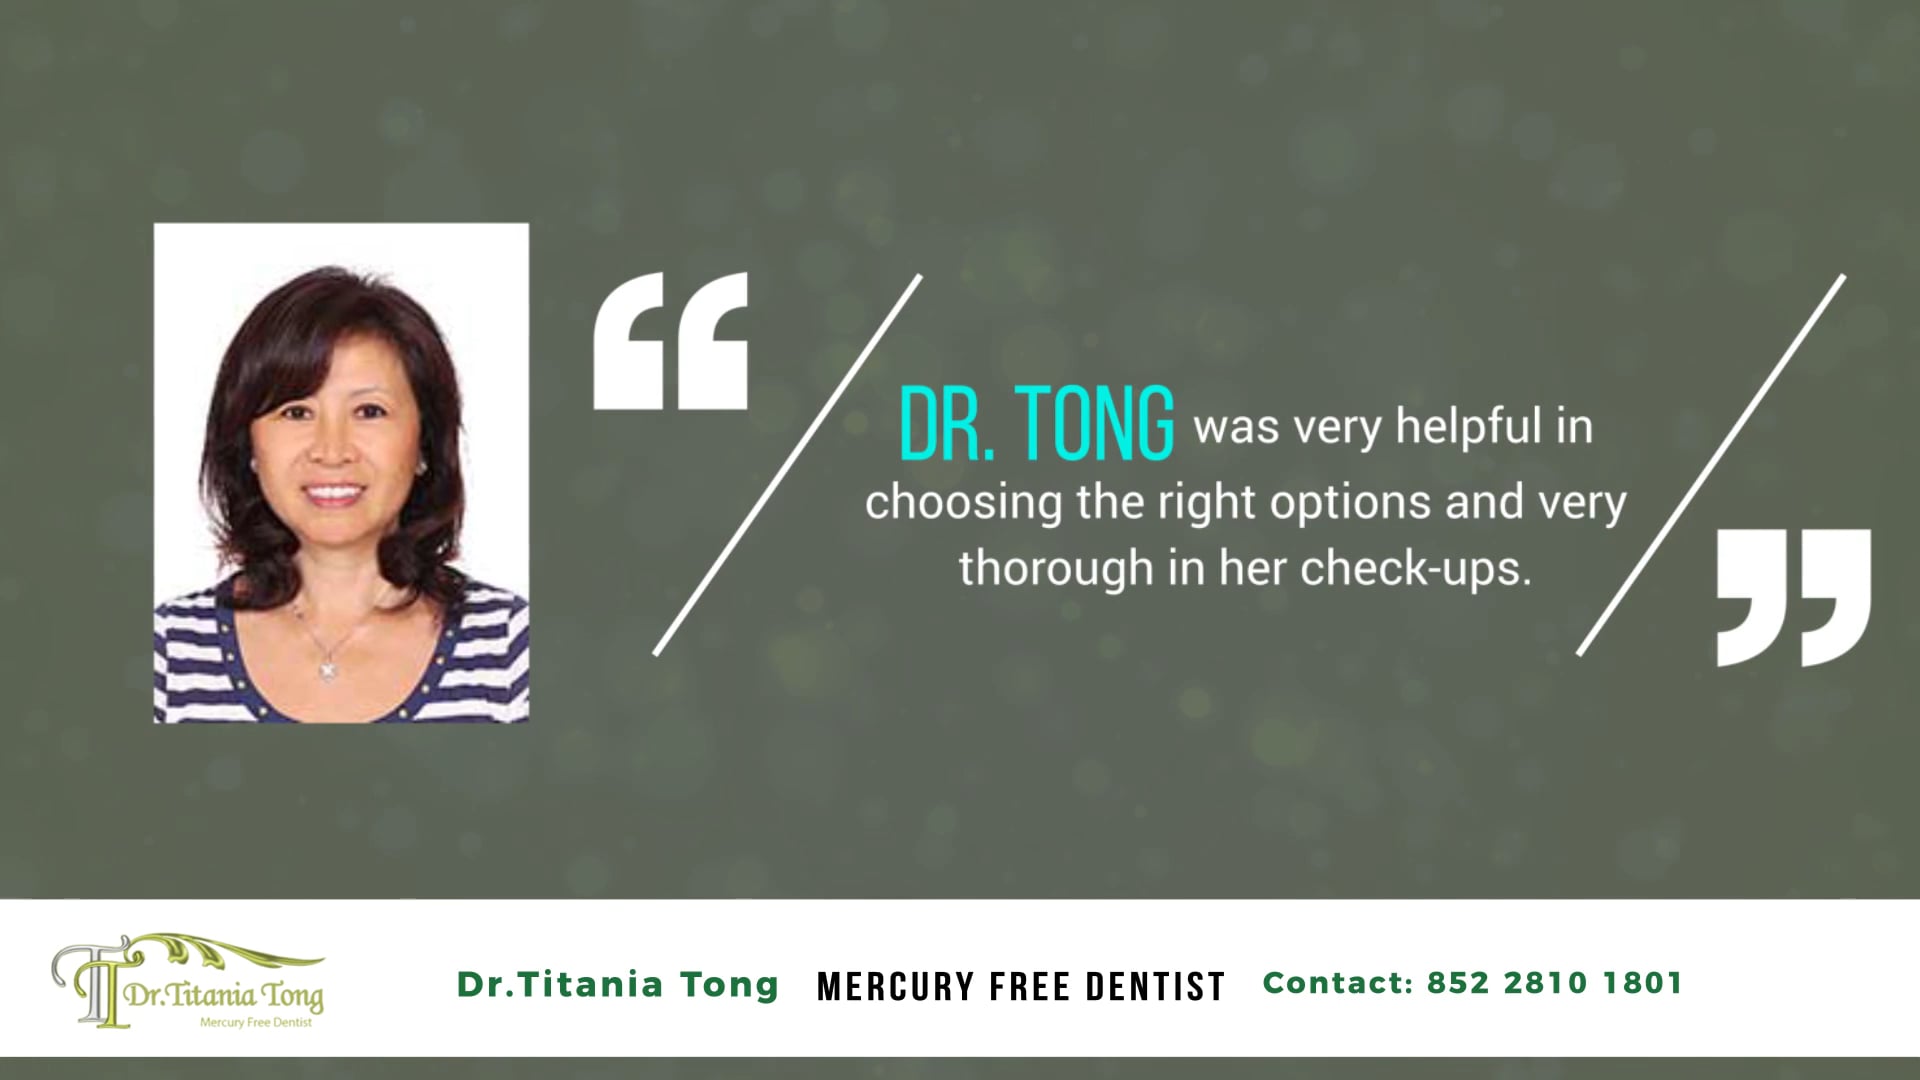 Dr.Titania Tong - Video Testimonial Creation - GMT